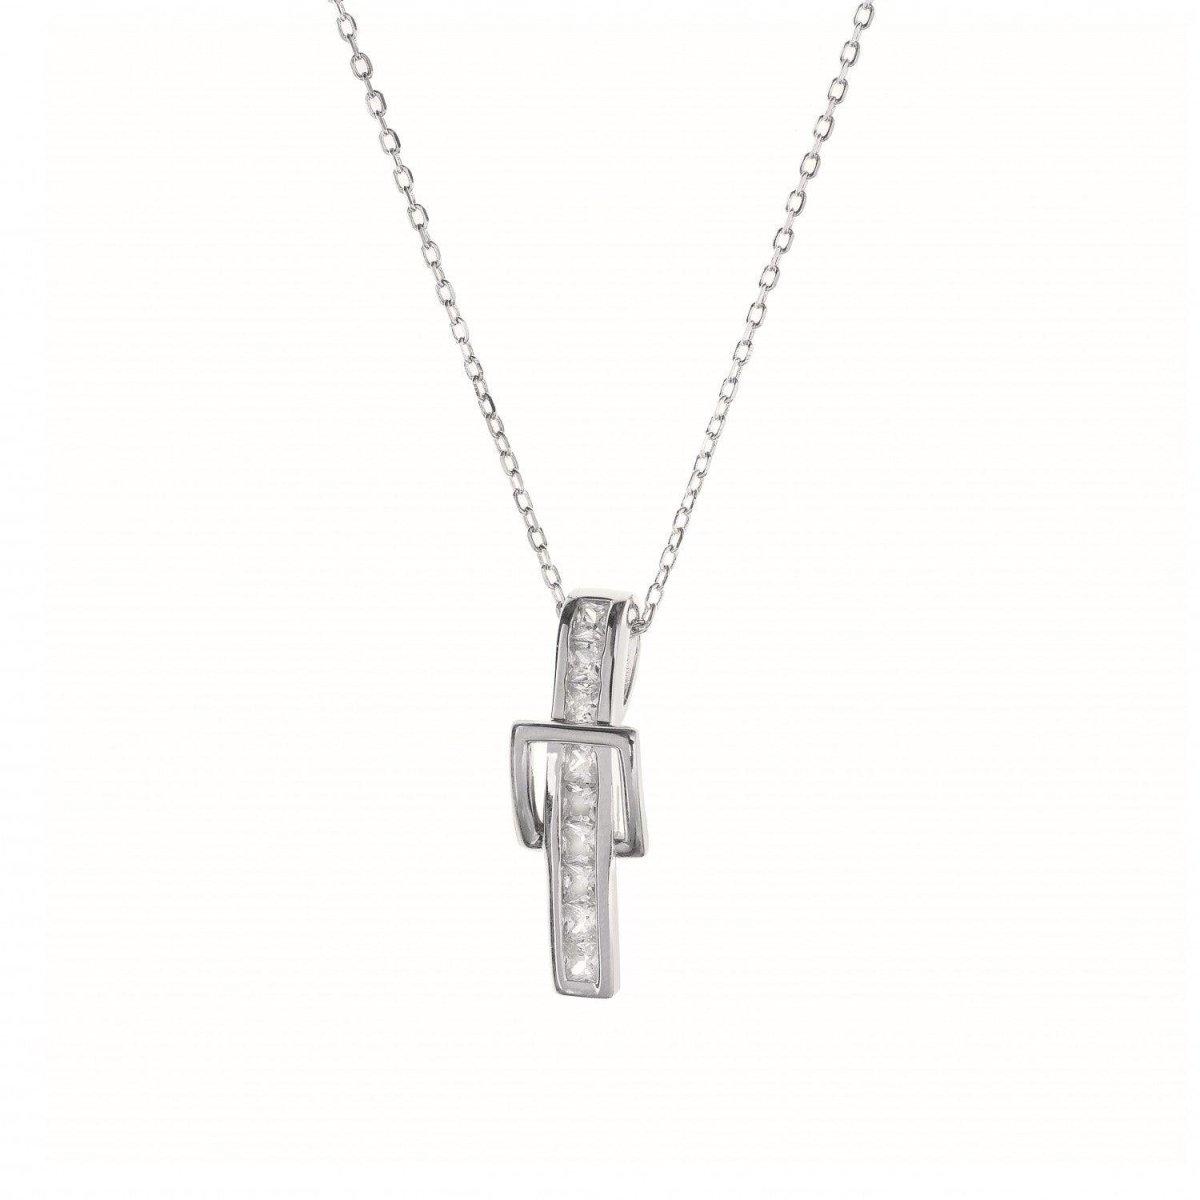 Collar · Colgante brillante de plata diseño hebilla cuadrada con engaste circonitas